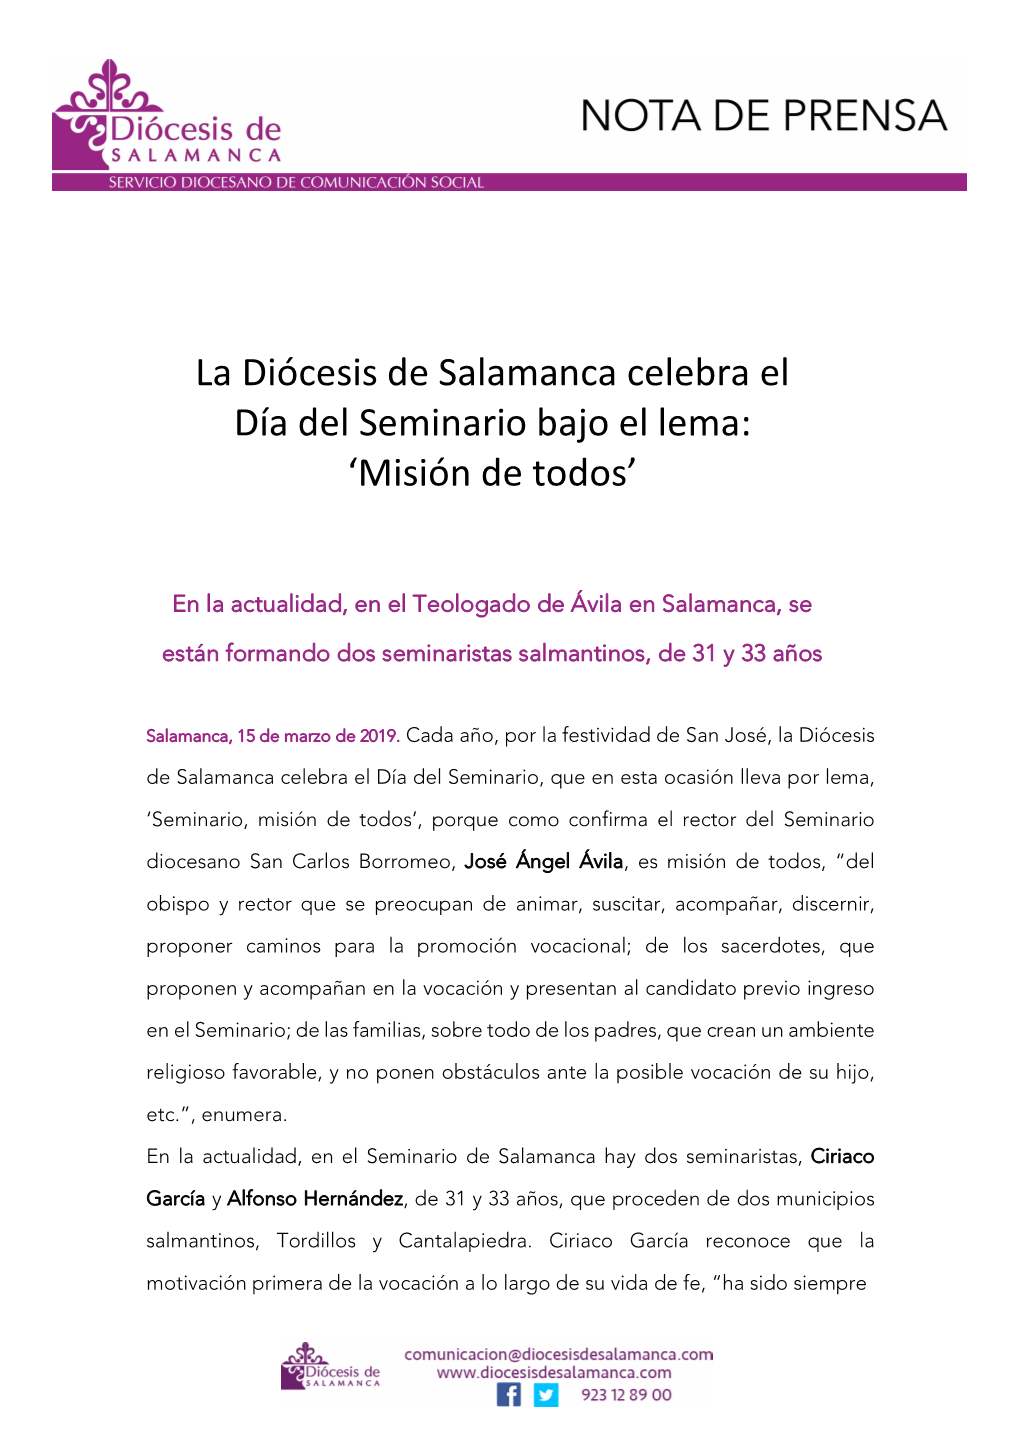 La Diócesis De Salamanca Celebra El Día Del Seminario Bajo El Lema: ‘Misión De Todos’